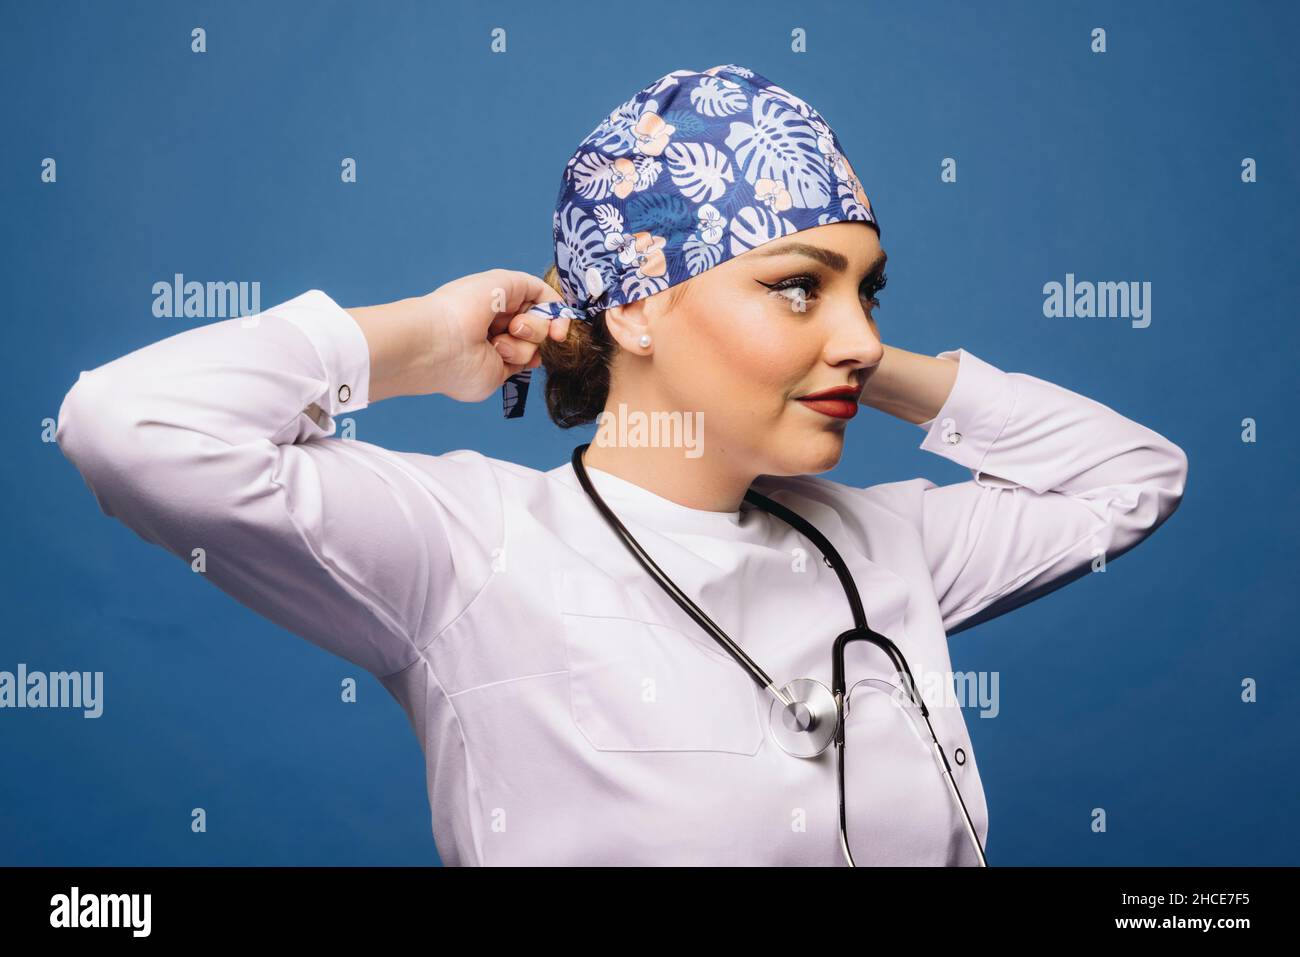 Ärztin mit weißem medizinischen Gewand und Stethoskop, die ein  einheitliches Bandana auf den Kopf bindet Stockfotografie - Alamy